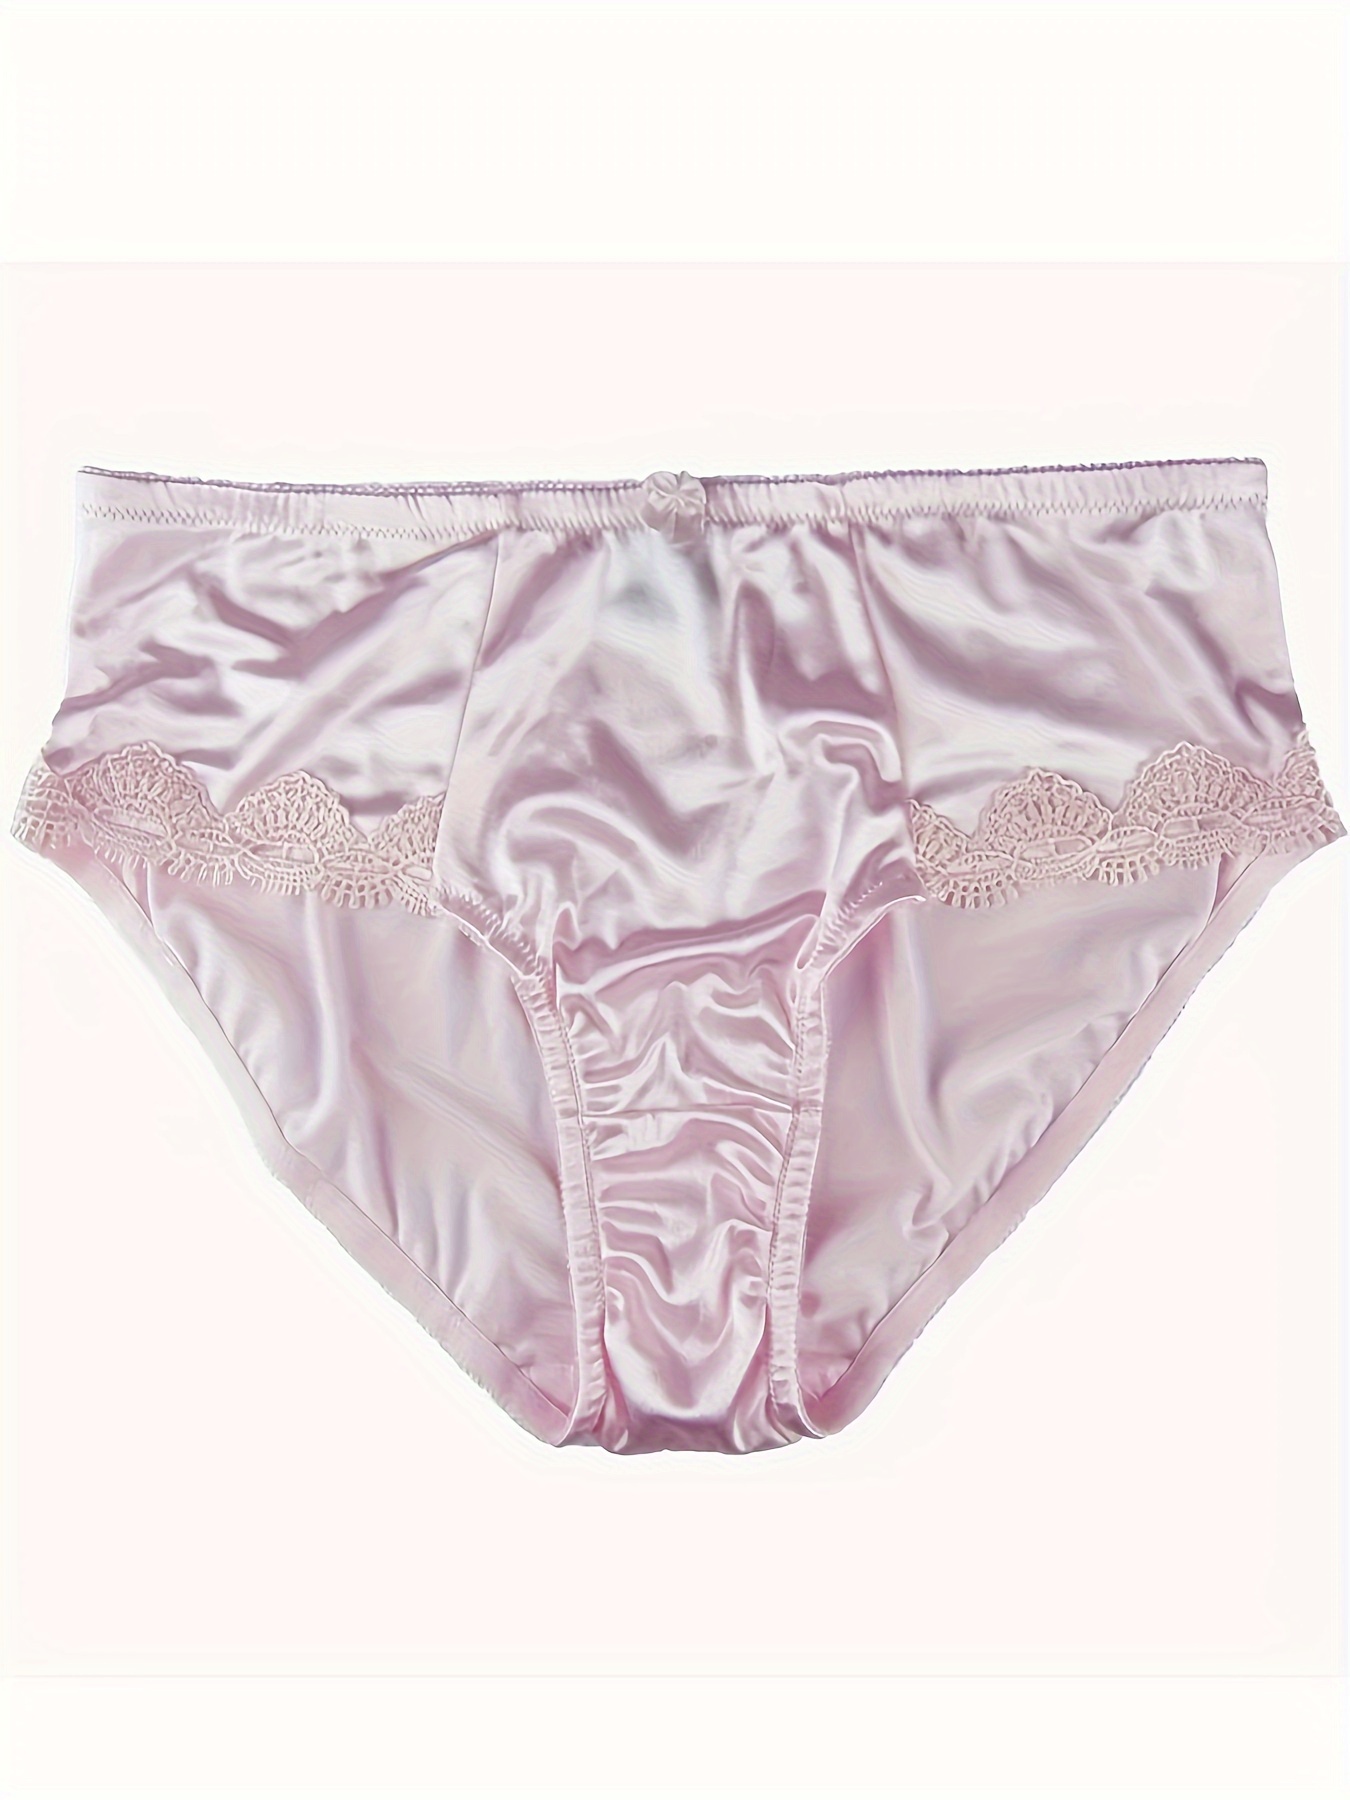 Silk Satin Respiratory Pink Satin Panties For Women 6 Pack